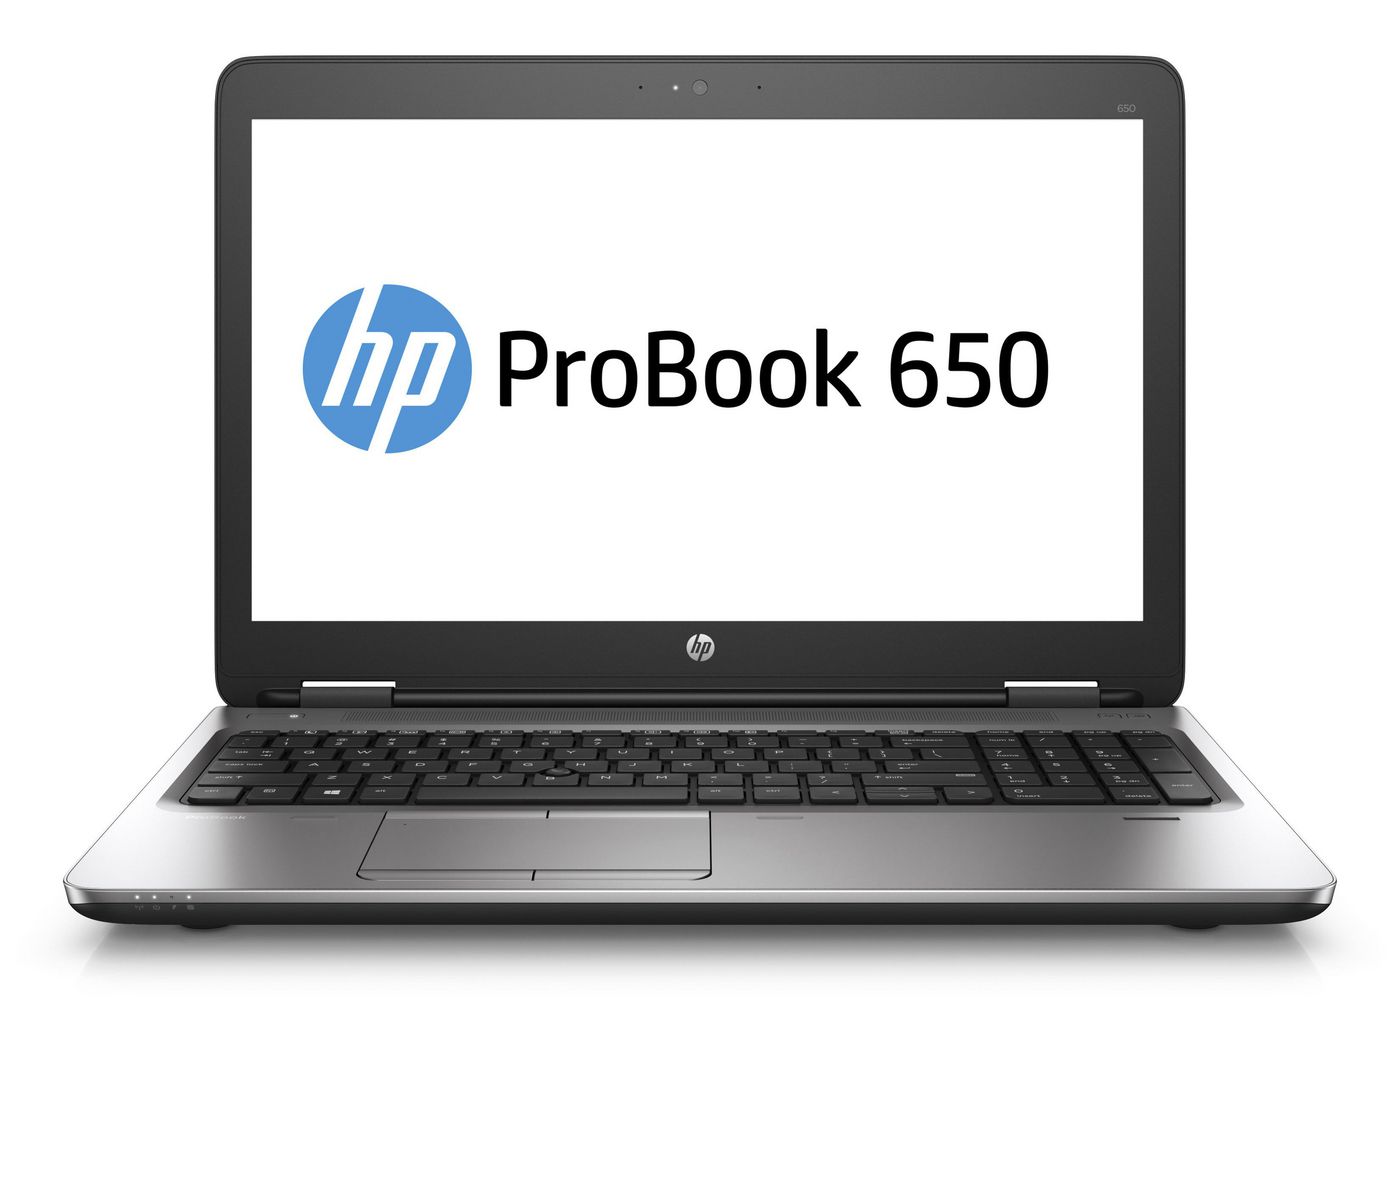 HP Y3B07ET-ABH ProBook 650 i5-6200U 